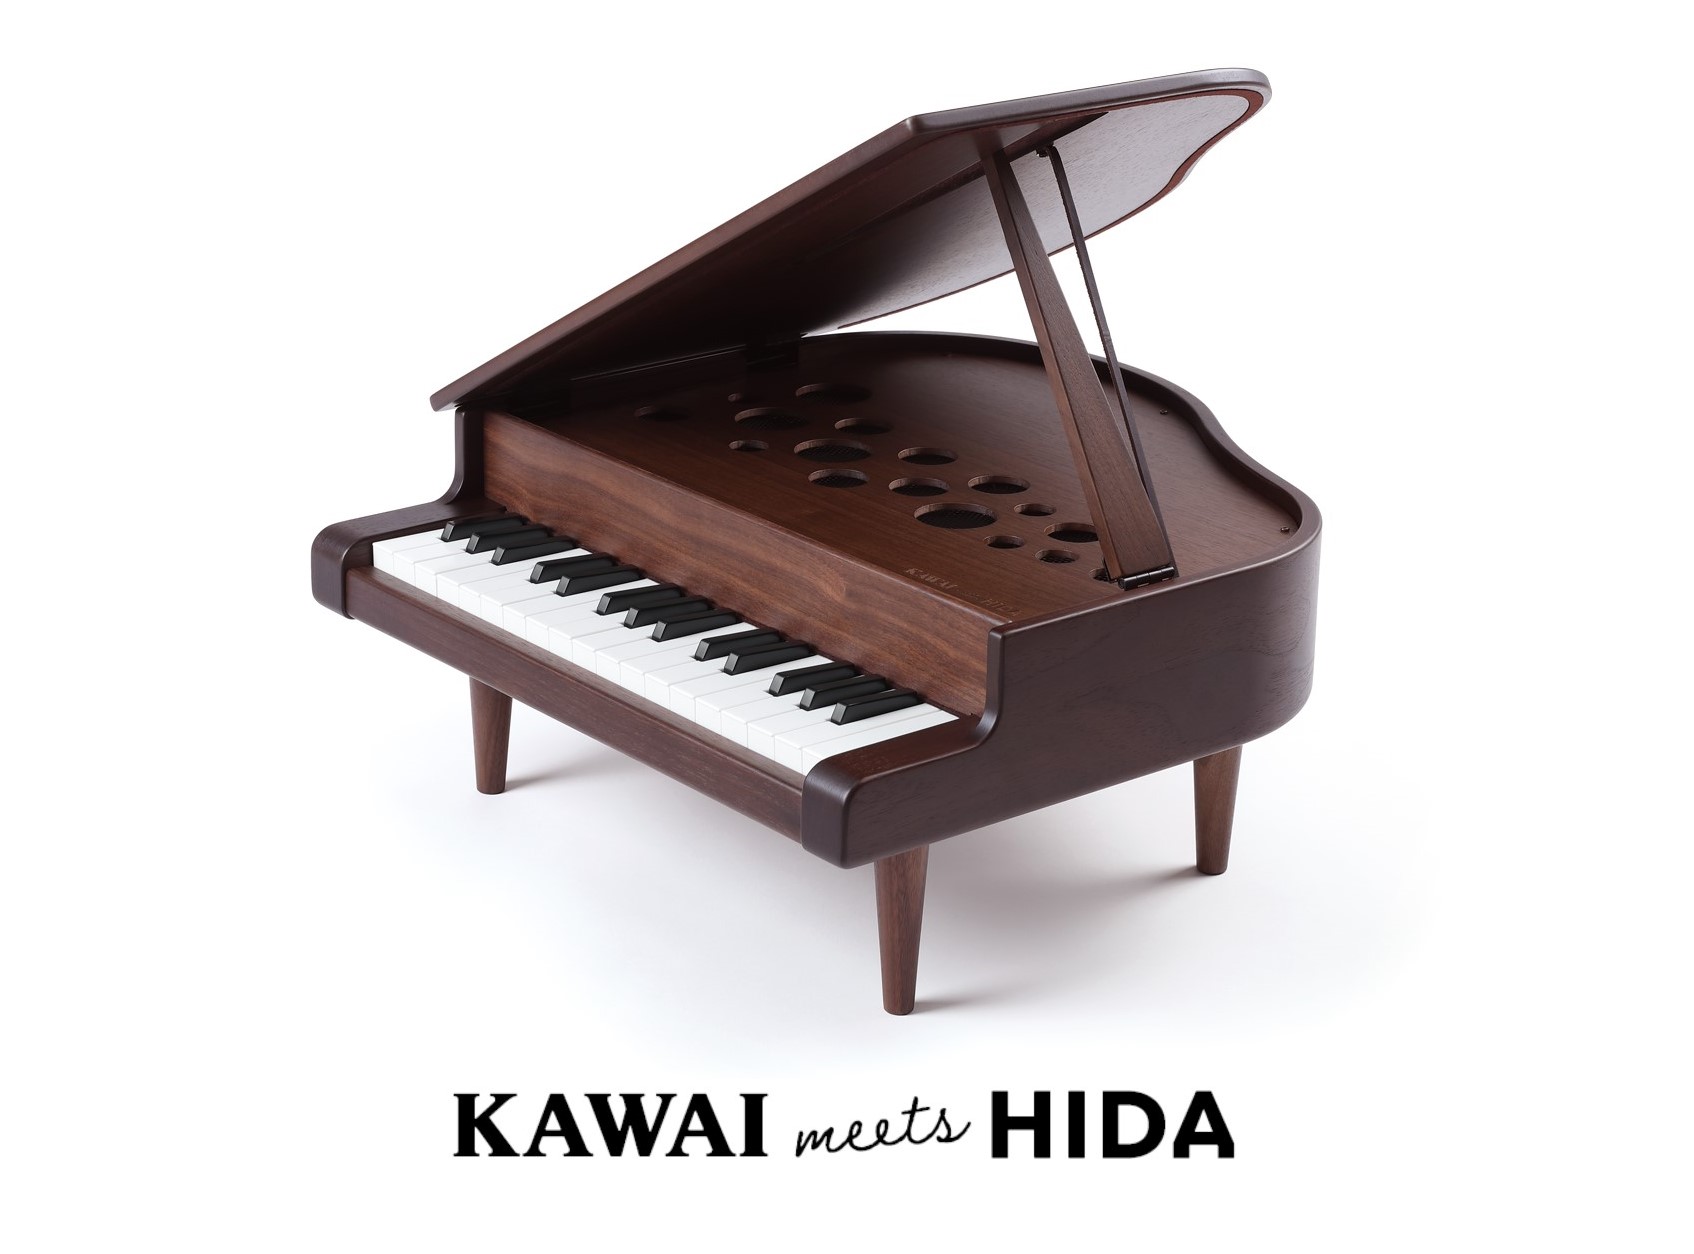 小さなピアニストに、小さな本物を。”『KAWAI meets HIDA ミニグランド